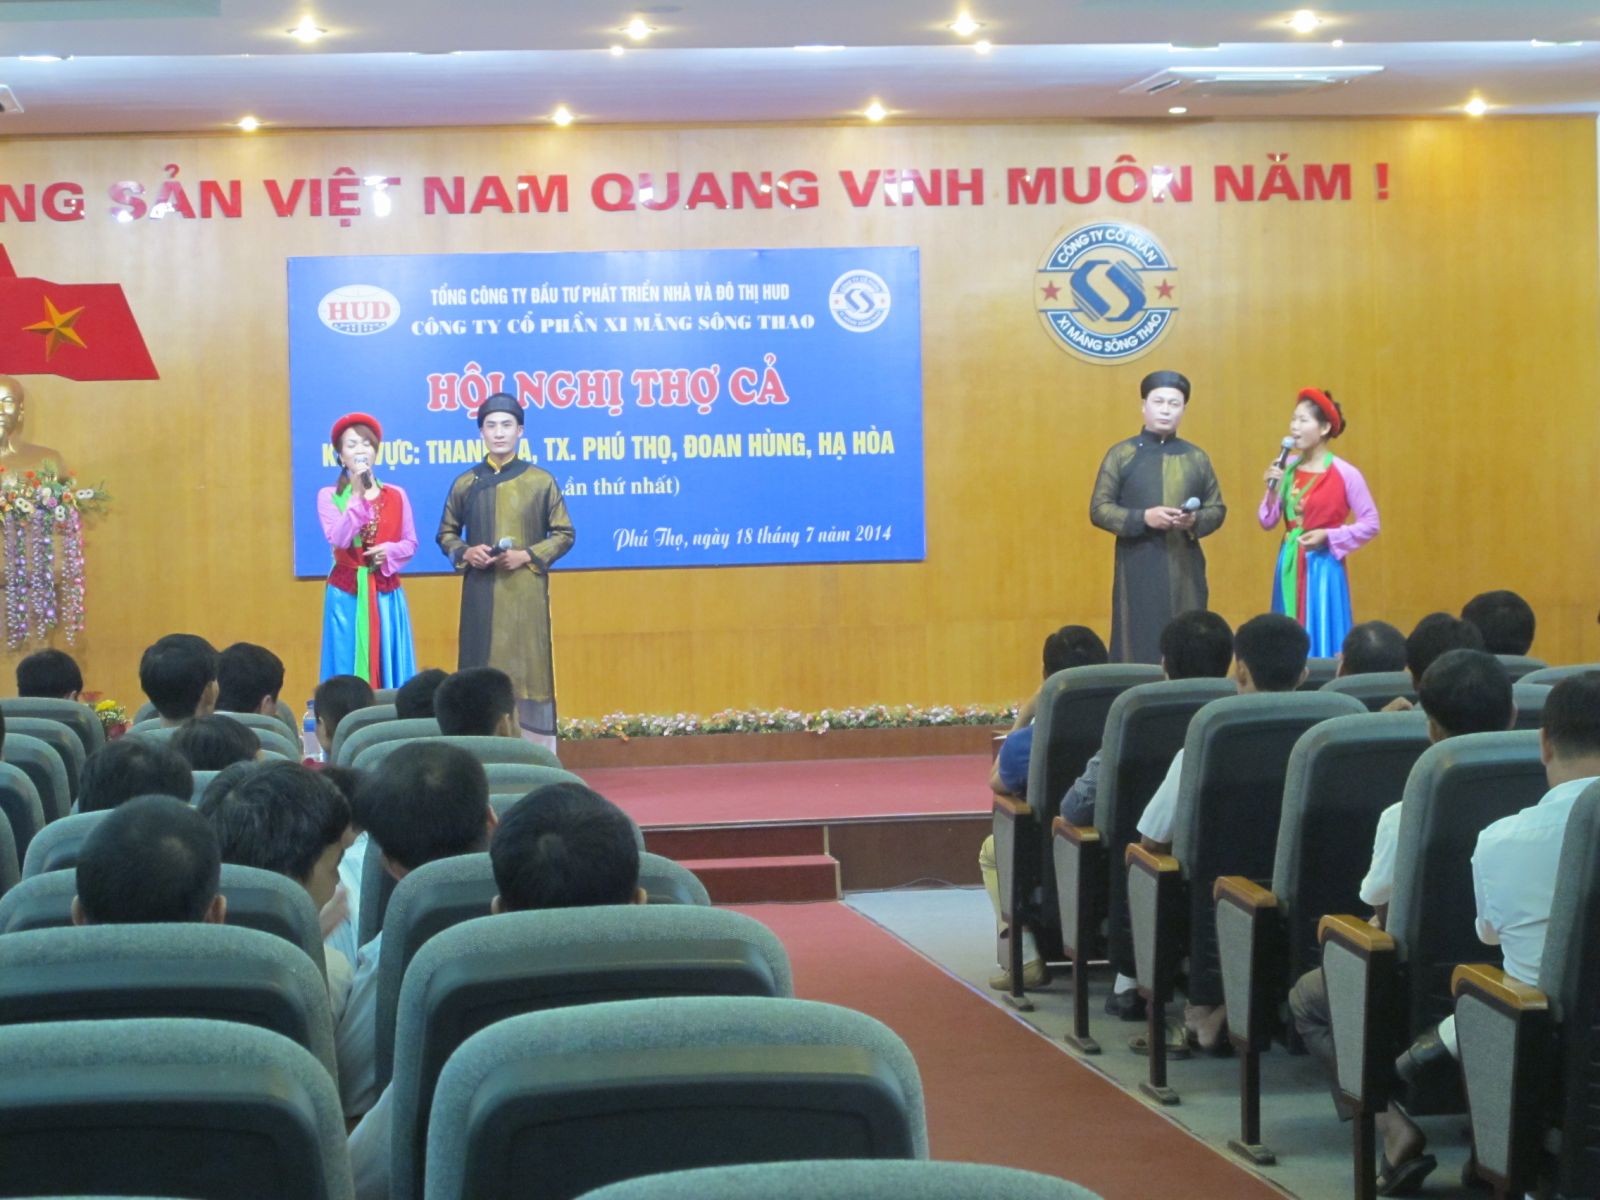 Công ty CP Xi măng Sông Thao: Tổ chức Hội nghị thợ cả khu vực: Thanh Ba, TX. Phú Thọ, Đoan Hùng, Hạ Hòa lần thứ nhất năm 2014